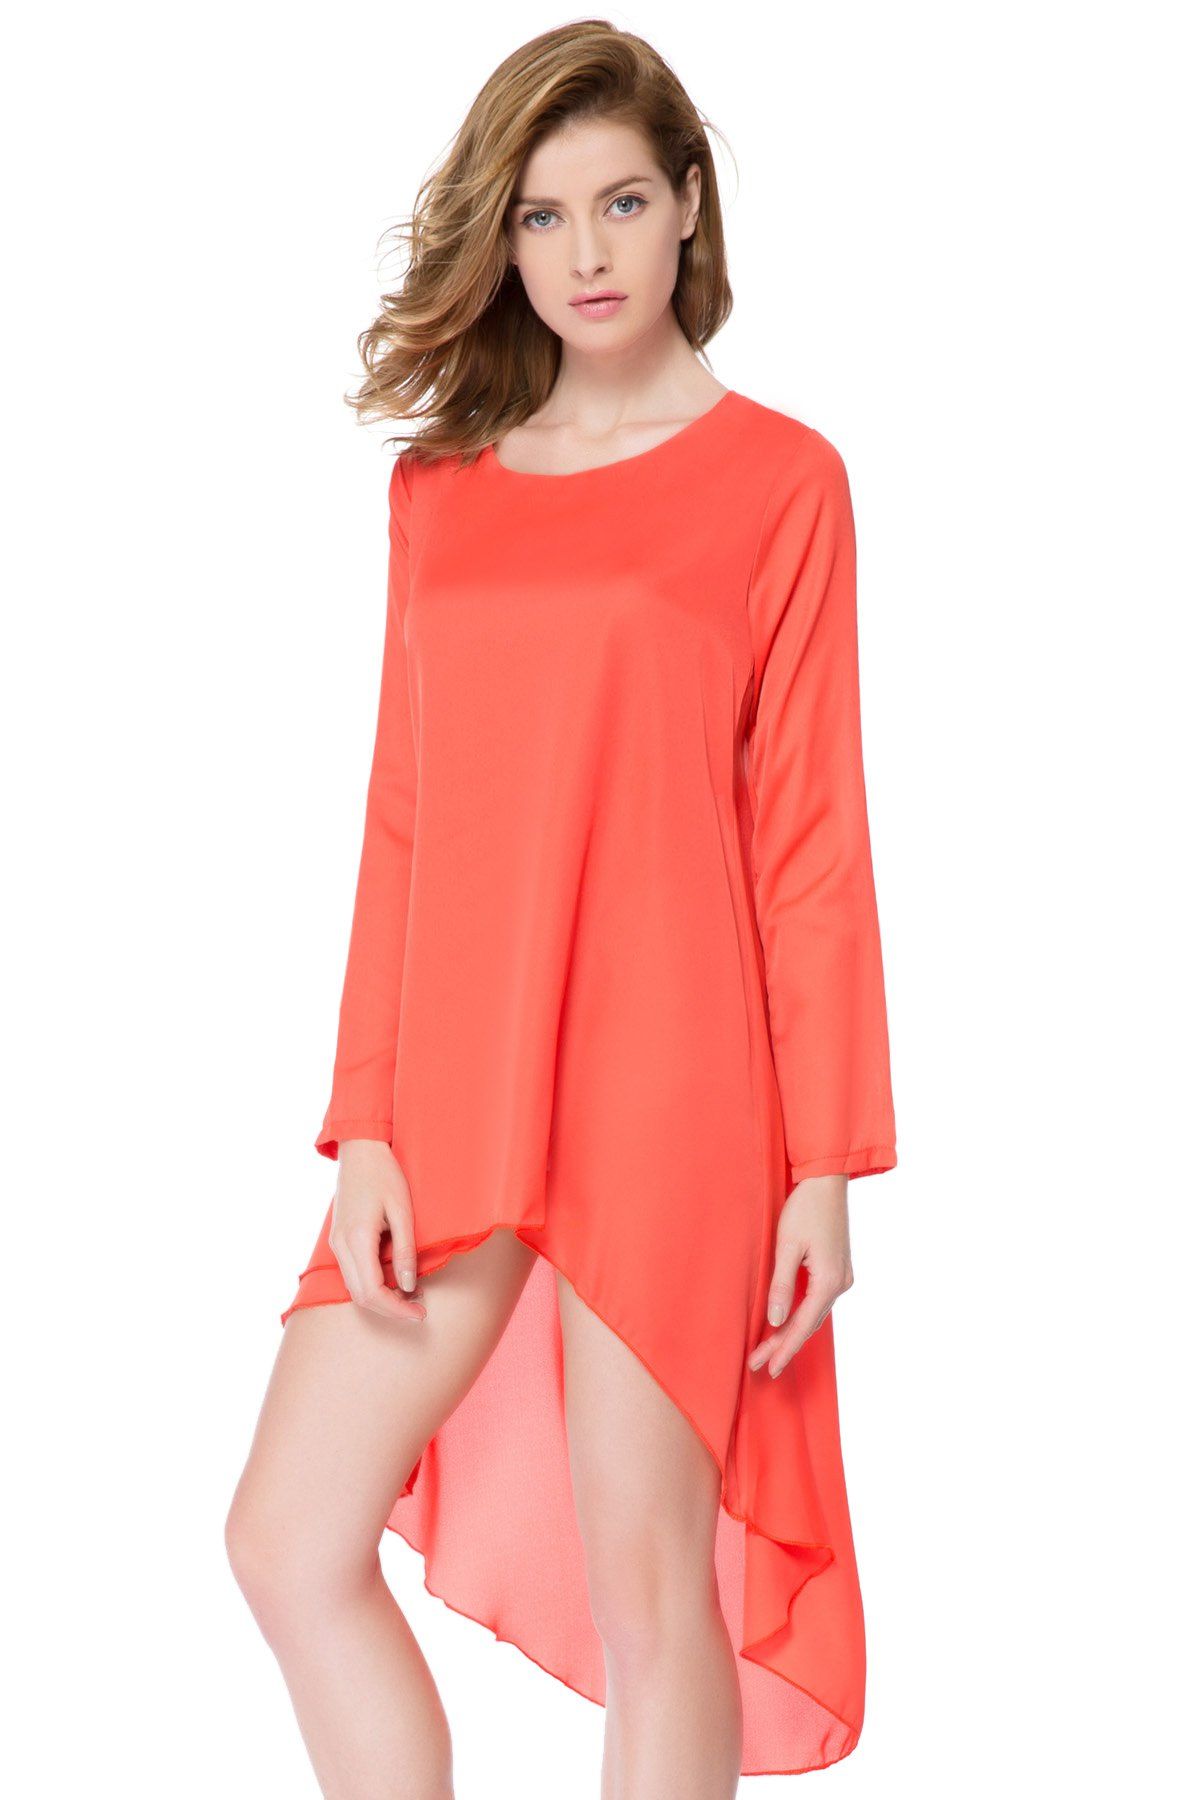 [32% OFF] Long Sleeve Chiffon Asymmetrical Casual Flowy Dress | Rosegal